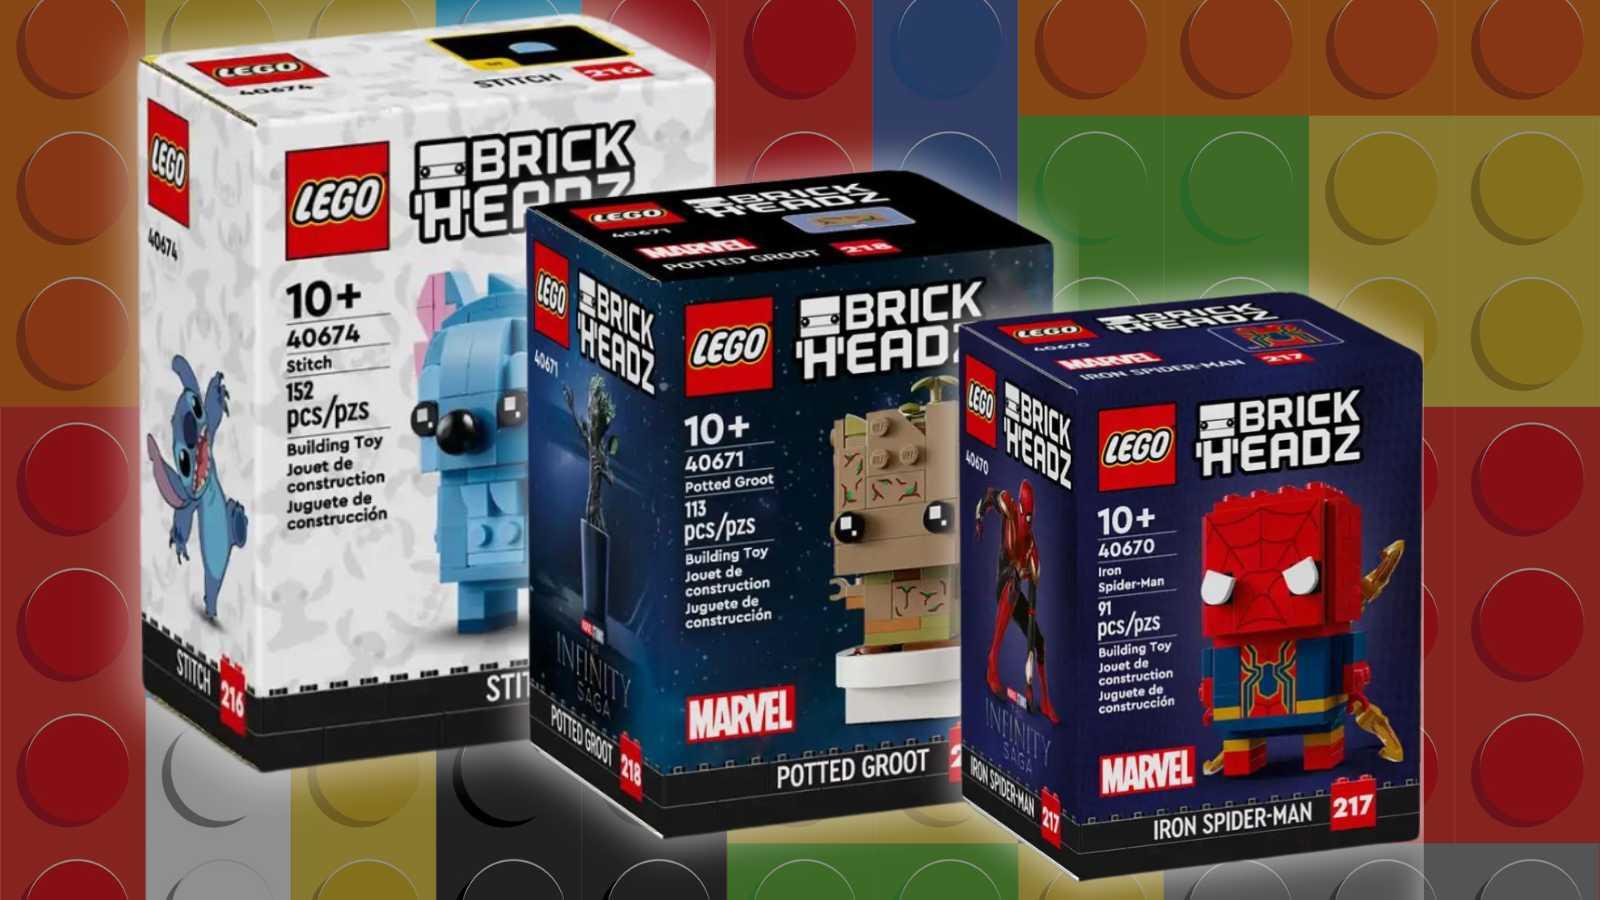 New LEGO BrickHeadz sets on LEGO background